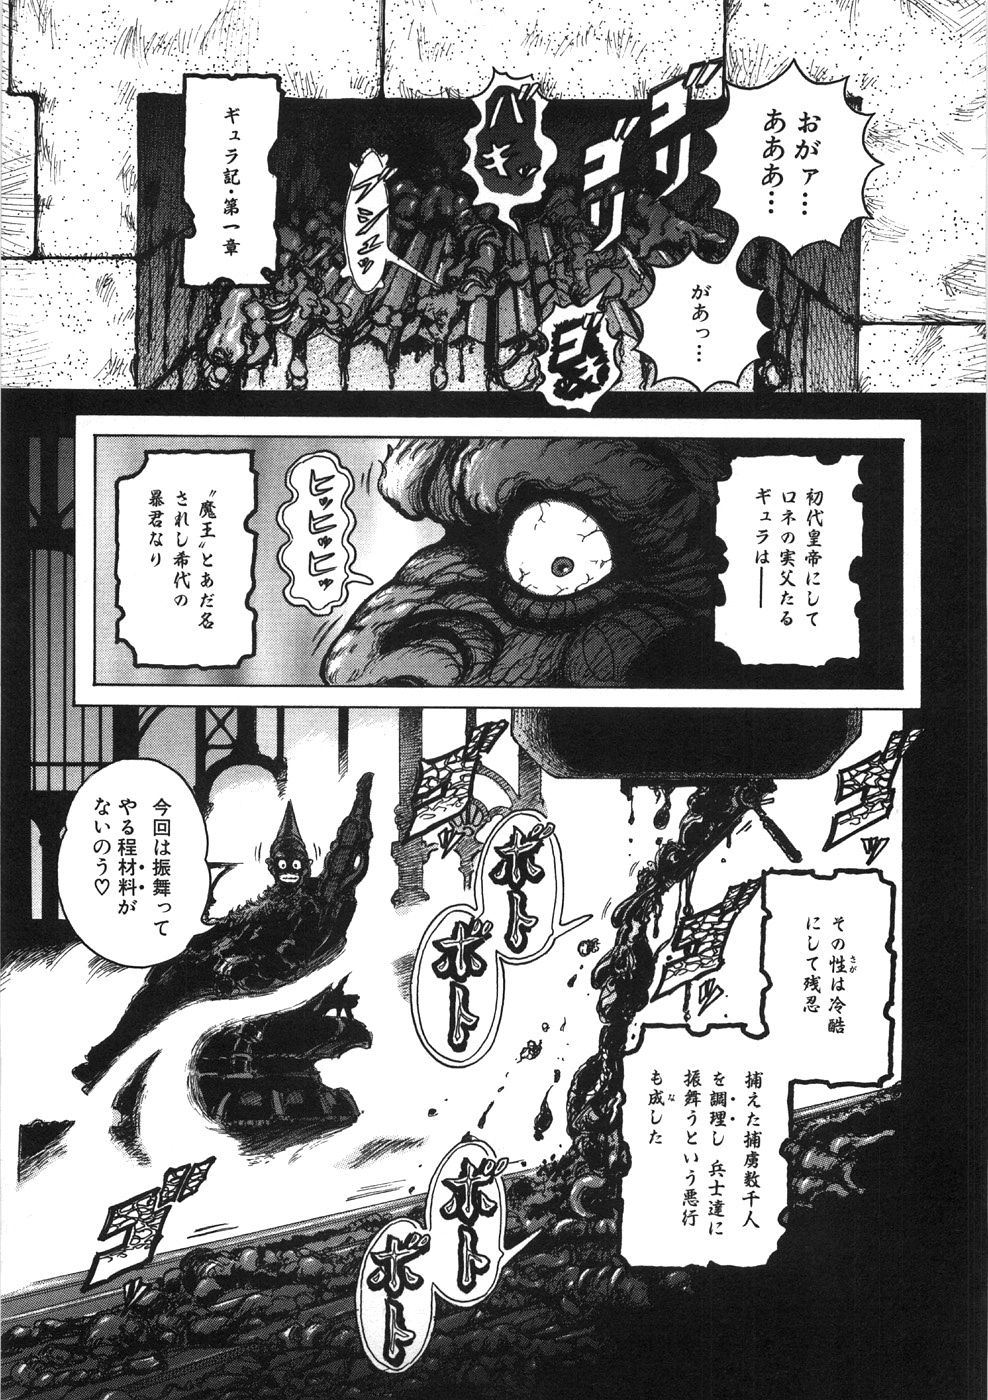 [Yasuhiko Ohtsuki] [ootsuki ho hiko] Rone no Nikki page 37 full